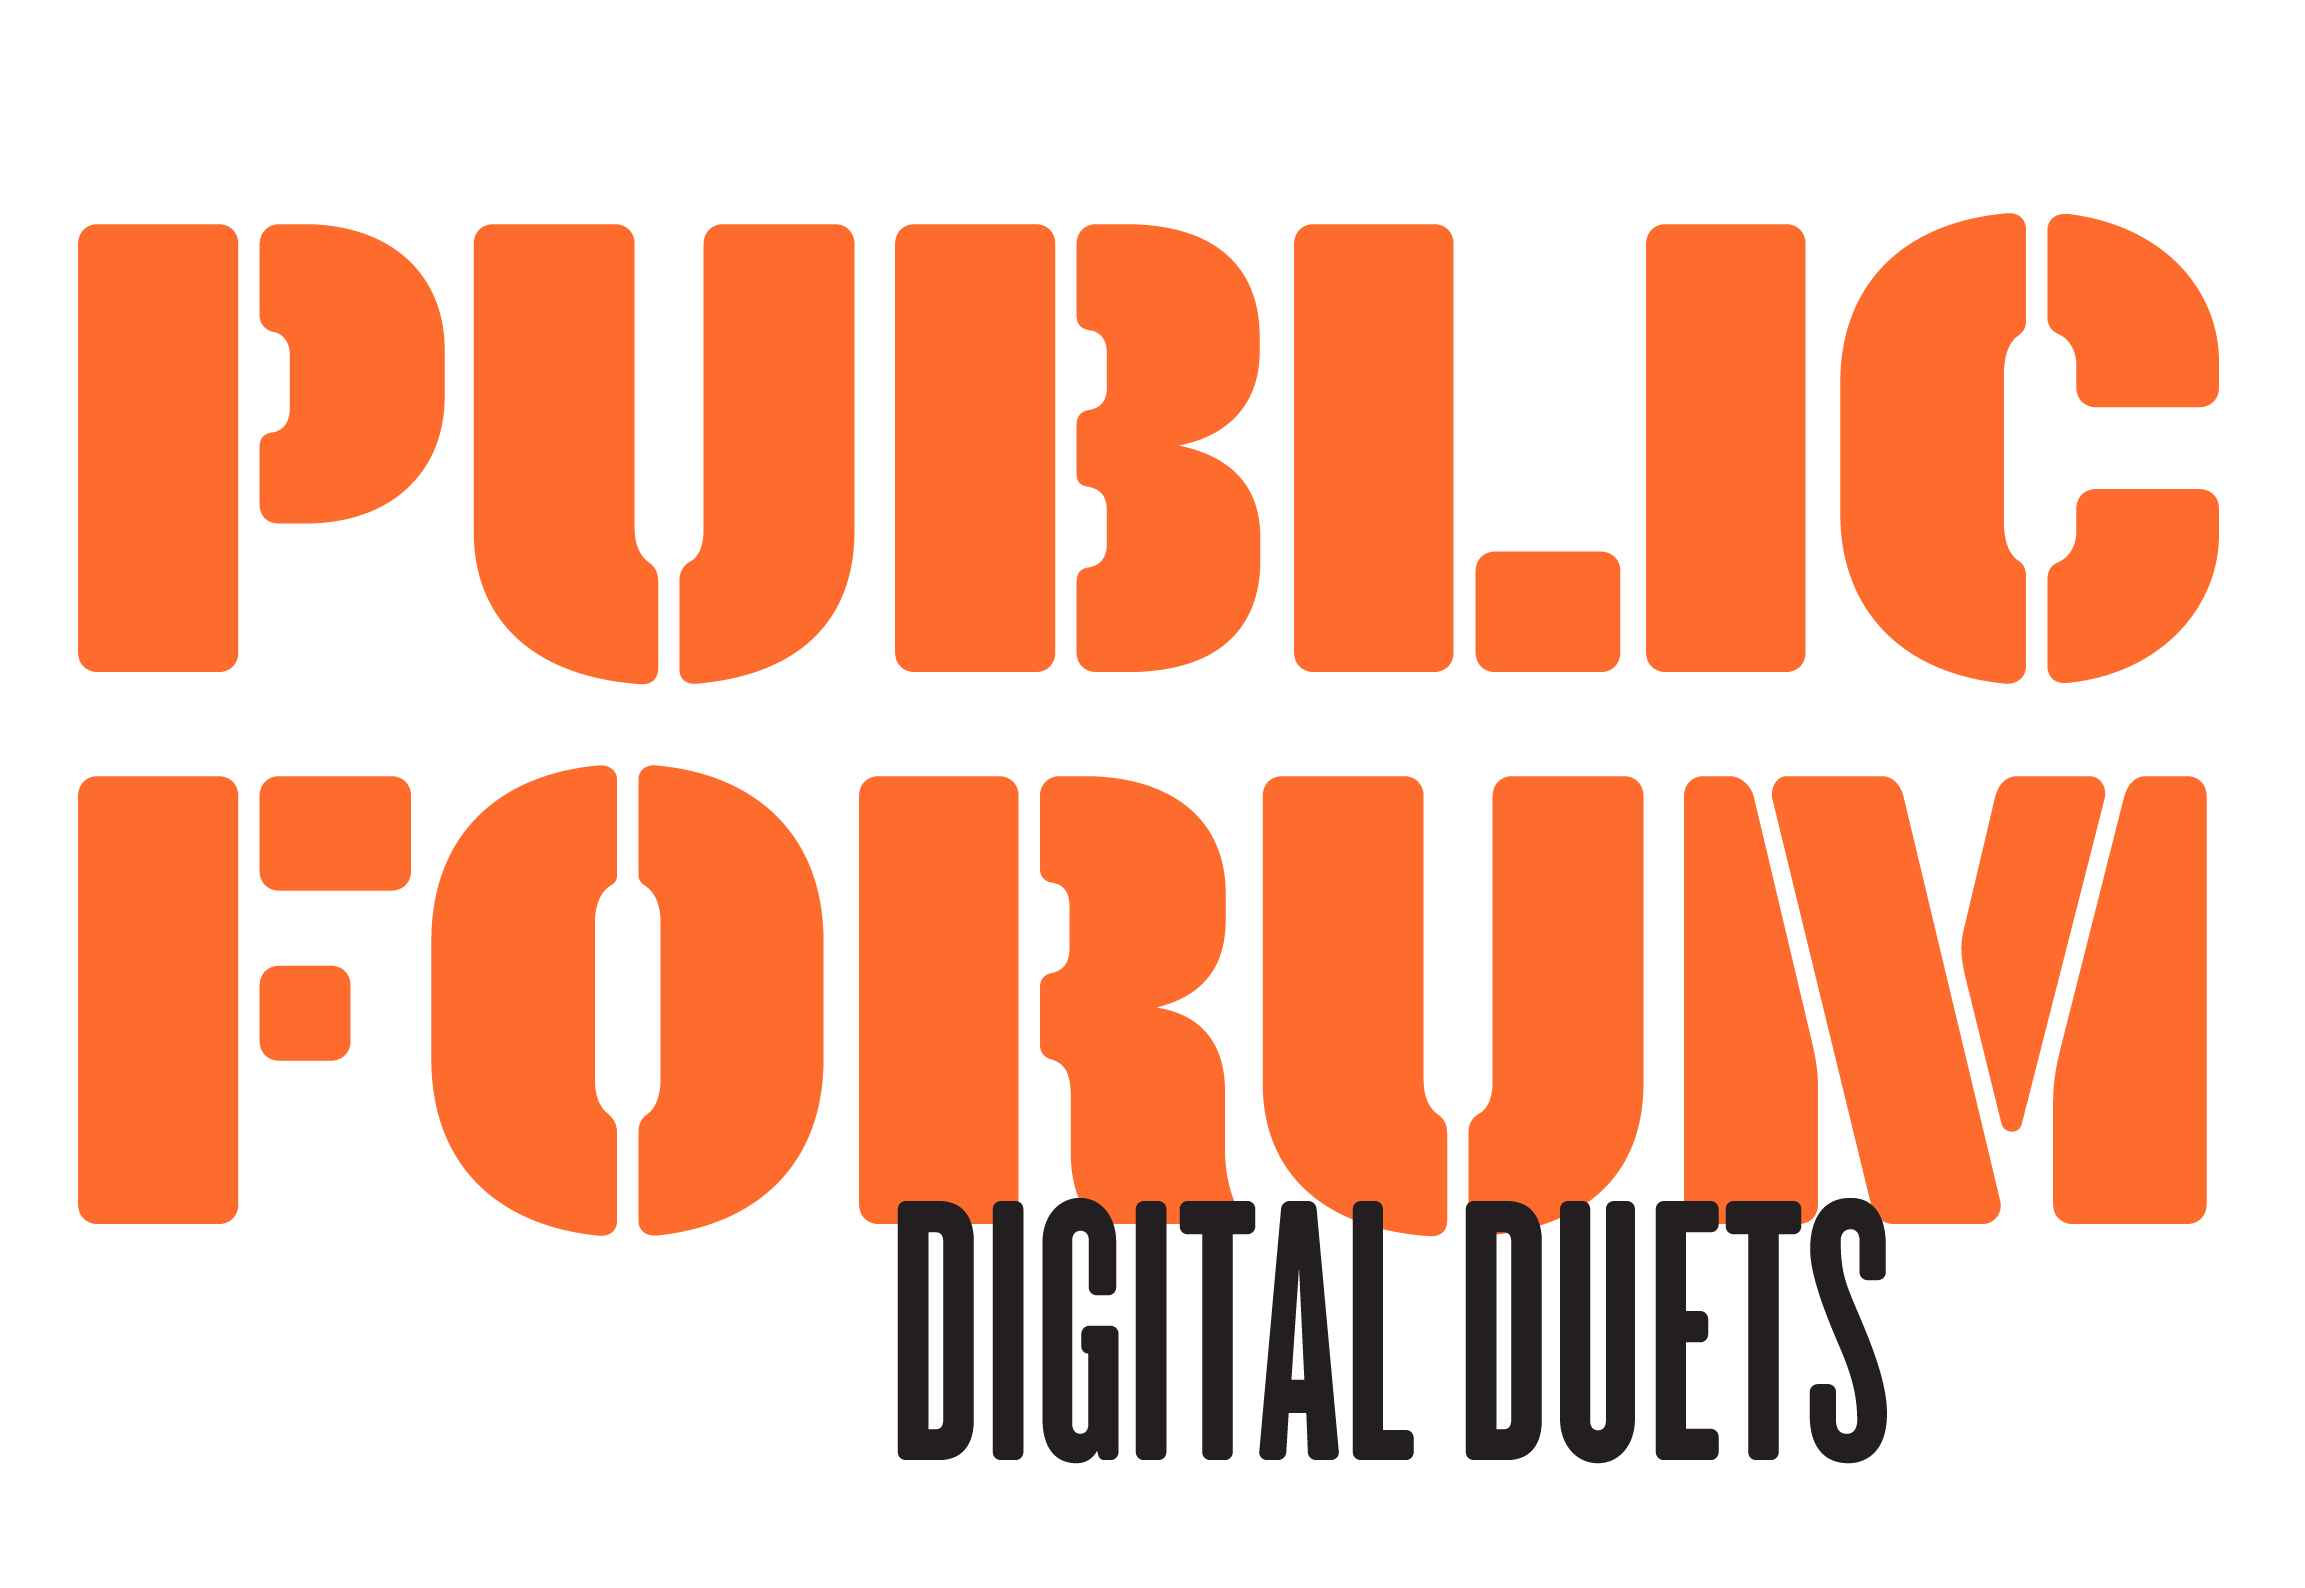 Public Forum: Digital Duets